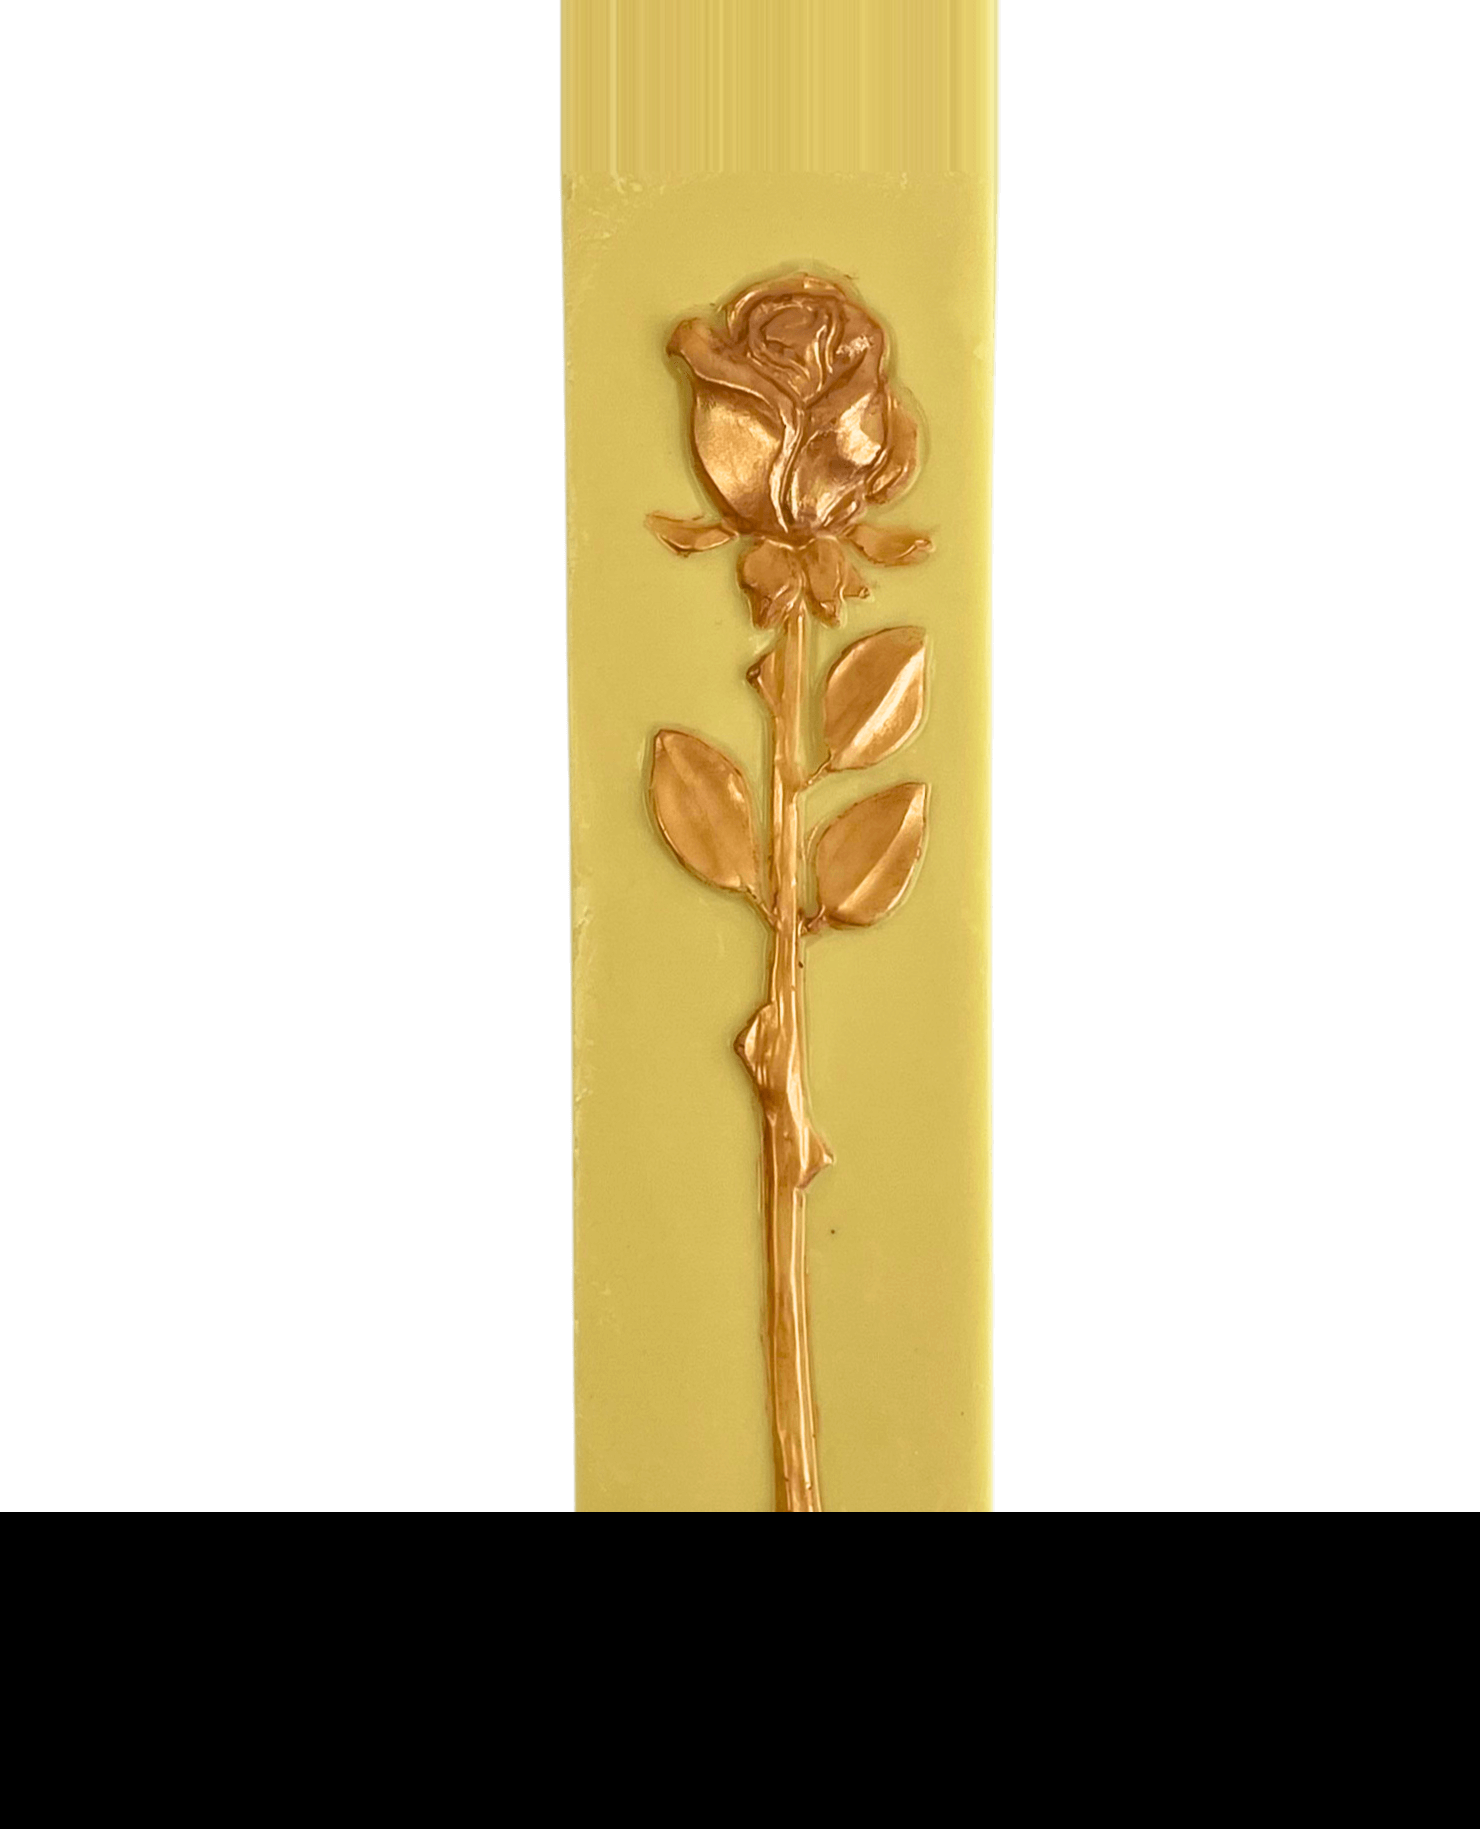 Ein essbares Kunstwerk - Rose im Golddekor auf weisser Schokolade